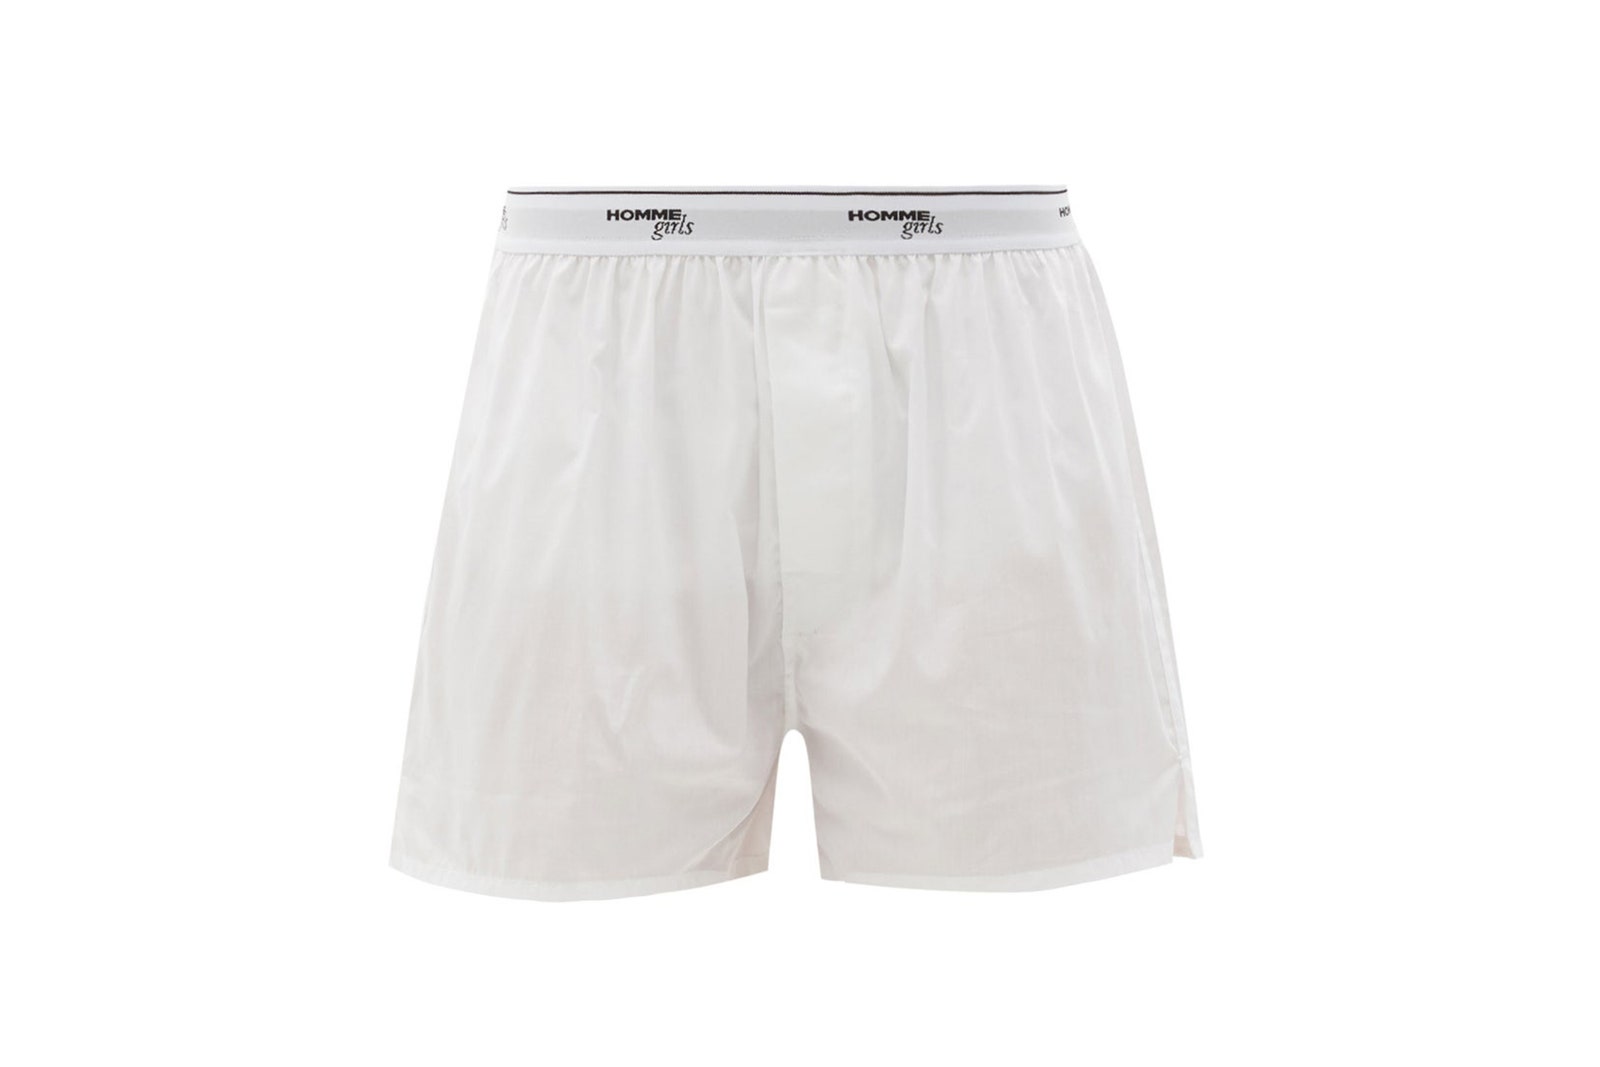 12 Amazing White Boxer Shorts for 2023